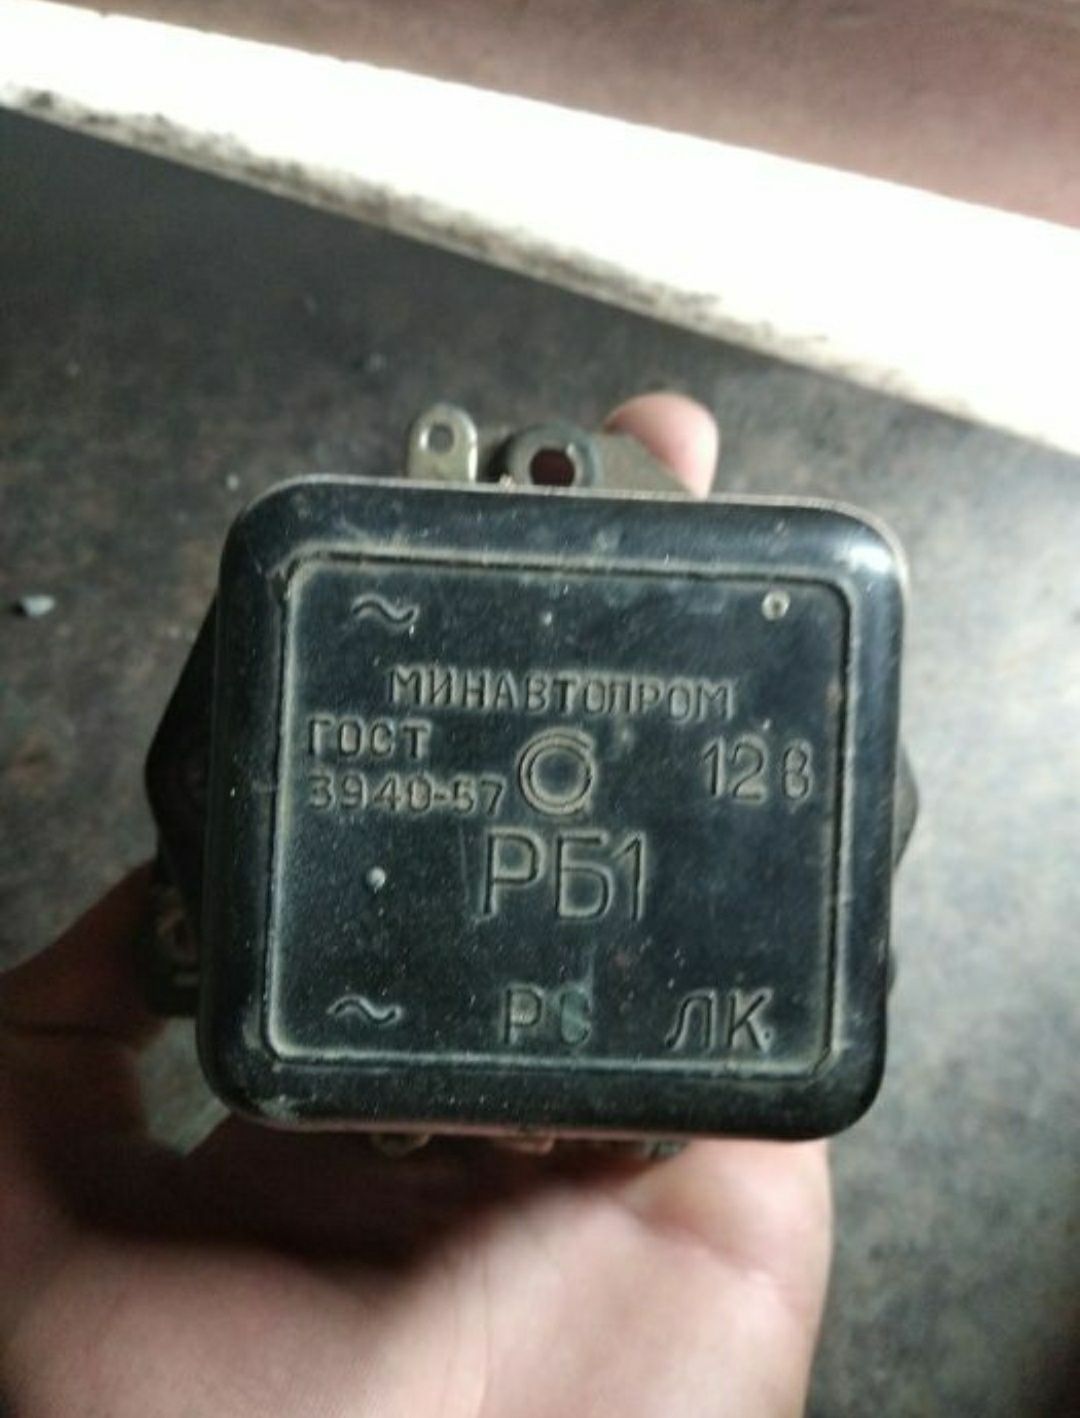 Реле блокировки стартера РБ1 на ЛуАЗ ЗАЗ Т-25 МТЗ-80